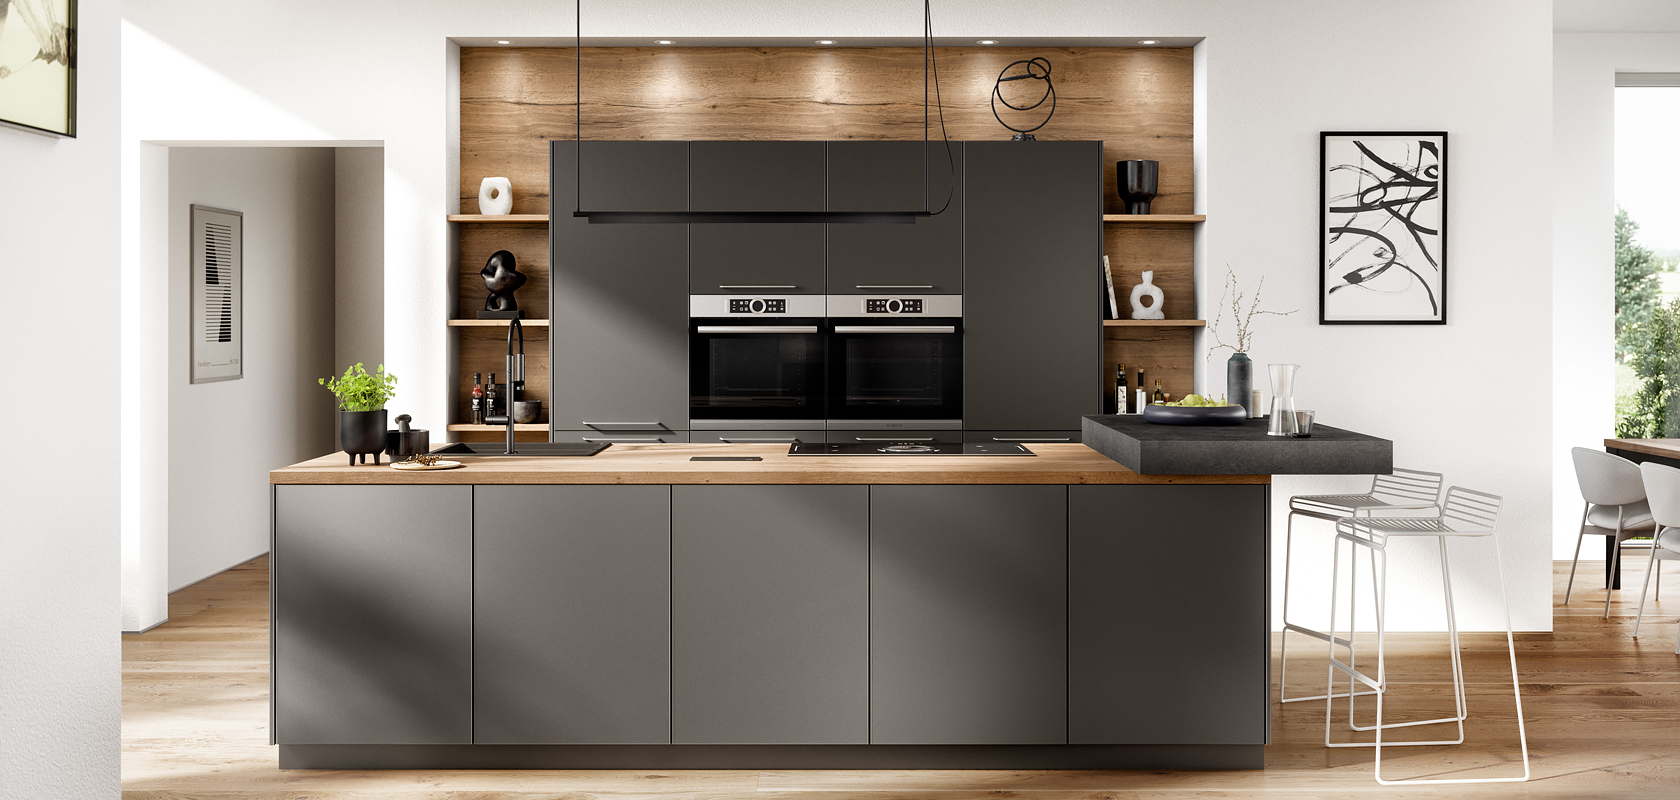 Moderne Kücheninnenräume mit eleganten dunklen Schränken, eingebauten Geräten und Holzakzenten, die Funktionalität mit Stil in einem hellen, minimalistischen Wohndesign verbinden.